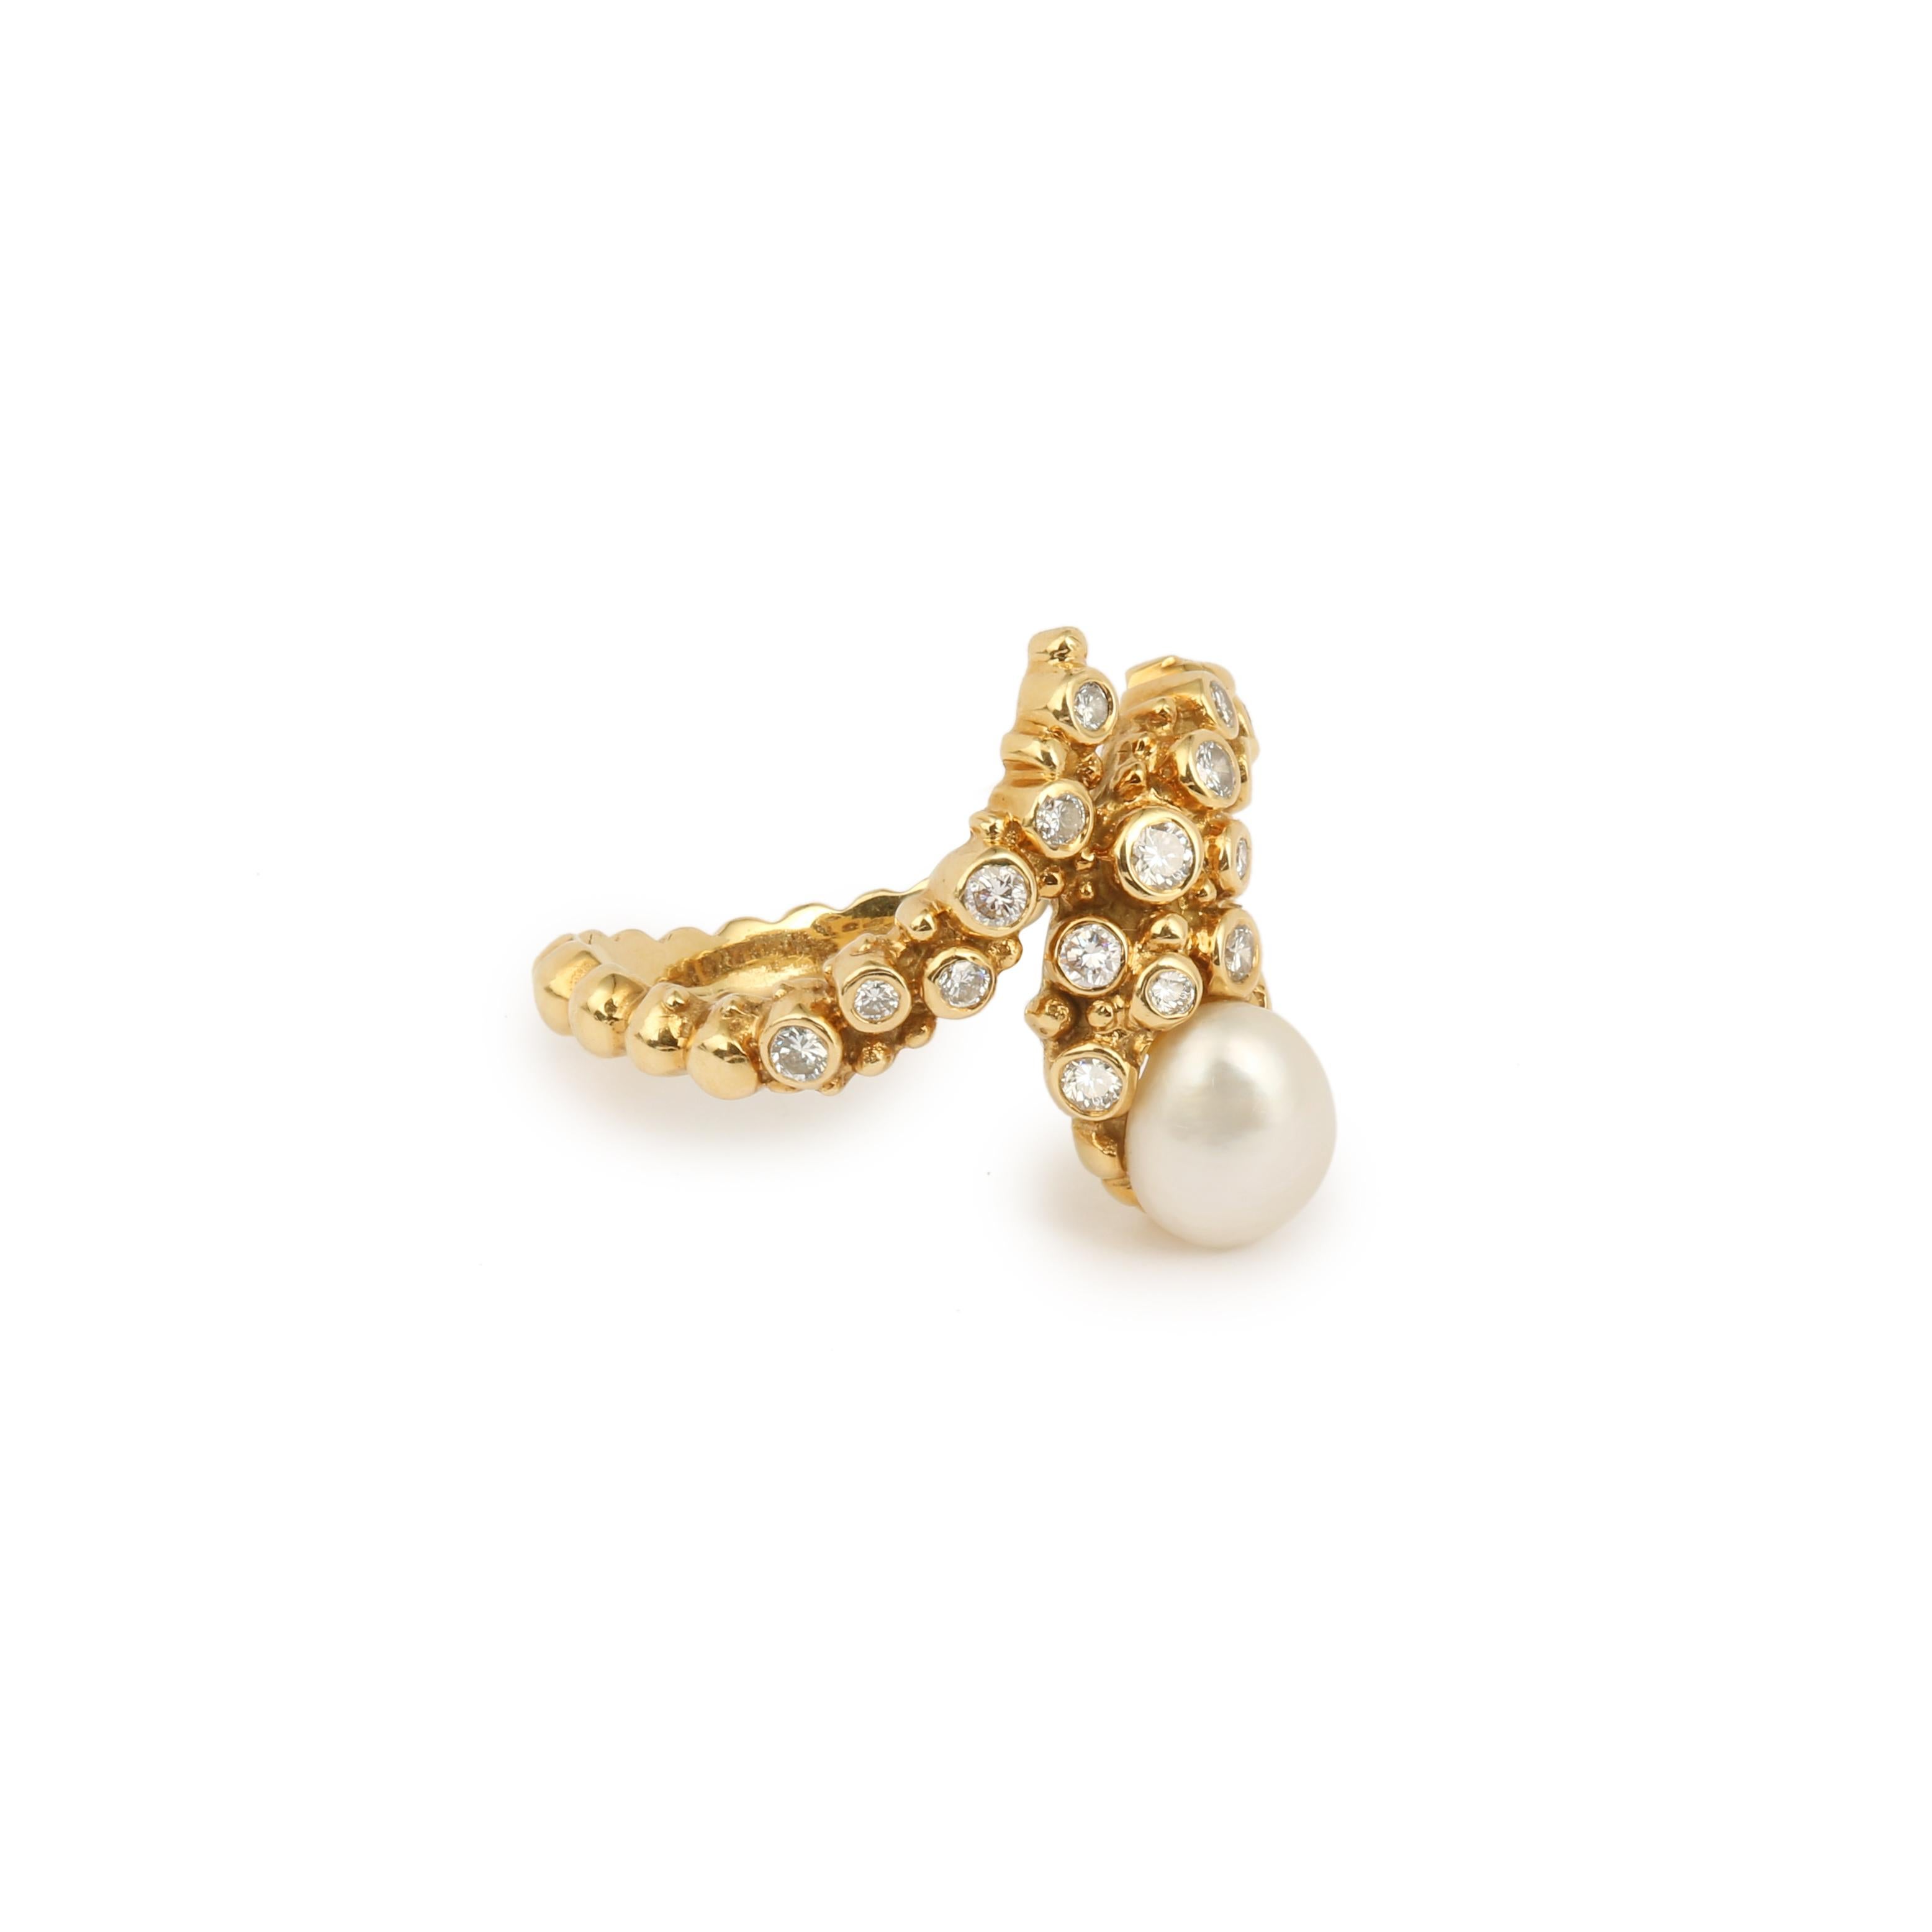 Ravissante bague Gilbert Albert en or jaune perlé représentant un serpent serti d'une perle baroque et de diamants.

Très beau travail d'or perlé, typique de Gilbert Albert, considéré comme l'un des plus grands joailliers du XXe siècle.

Poids total